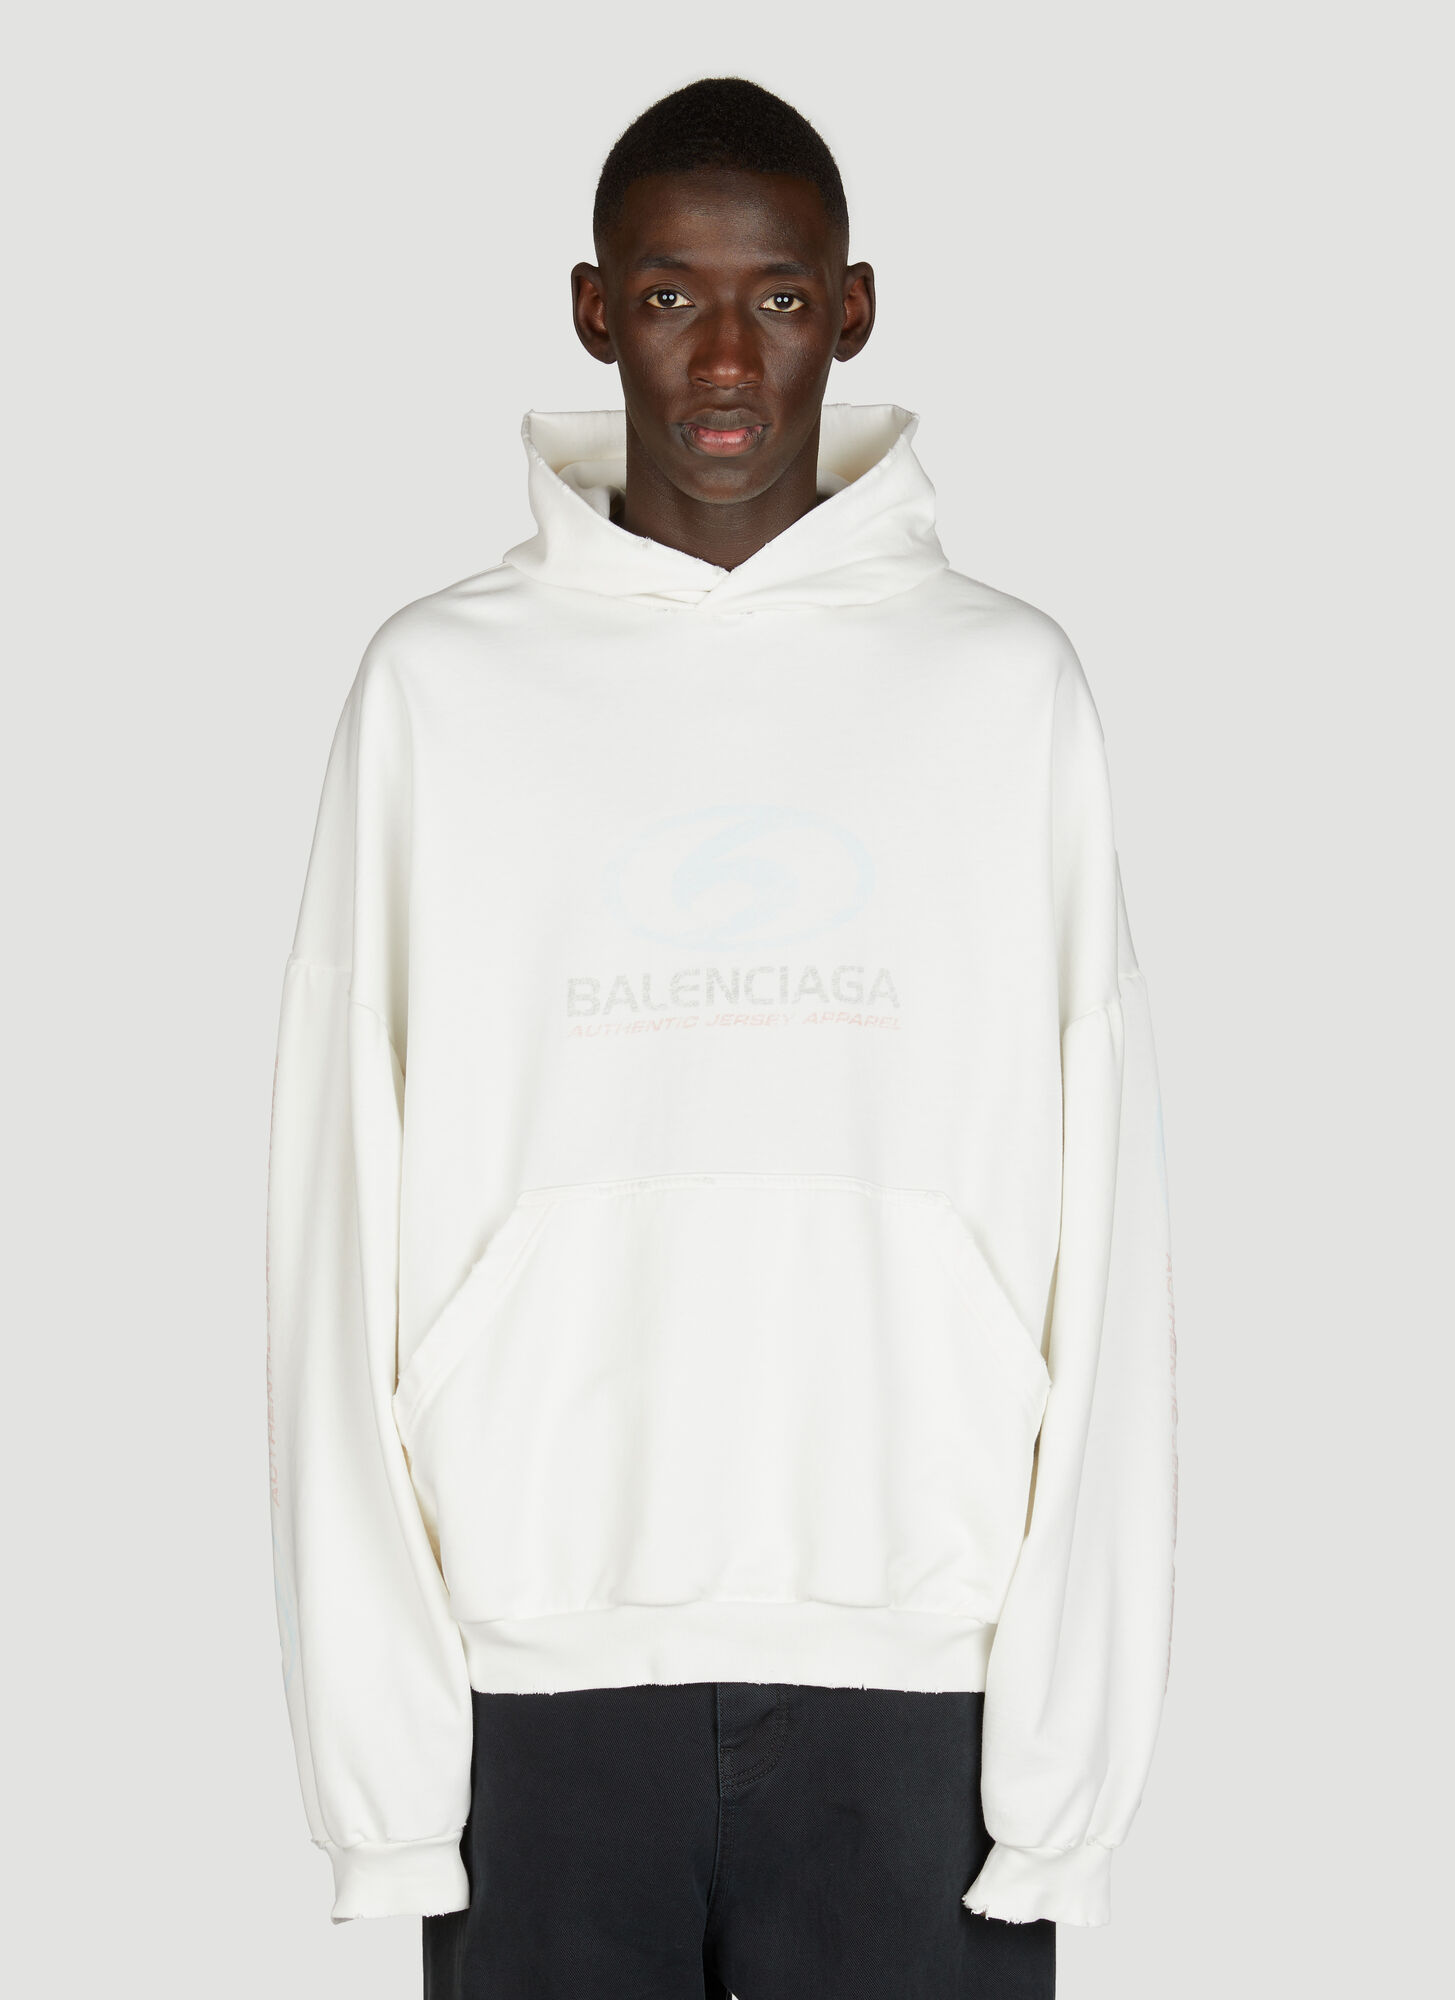 Balenciaga - Man Sweatshirts 2